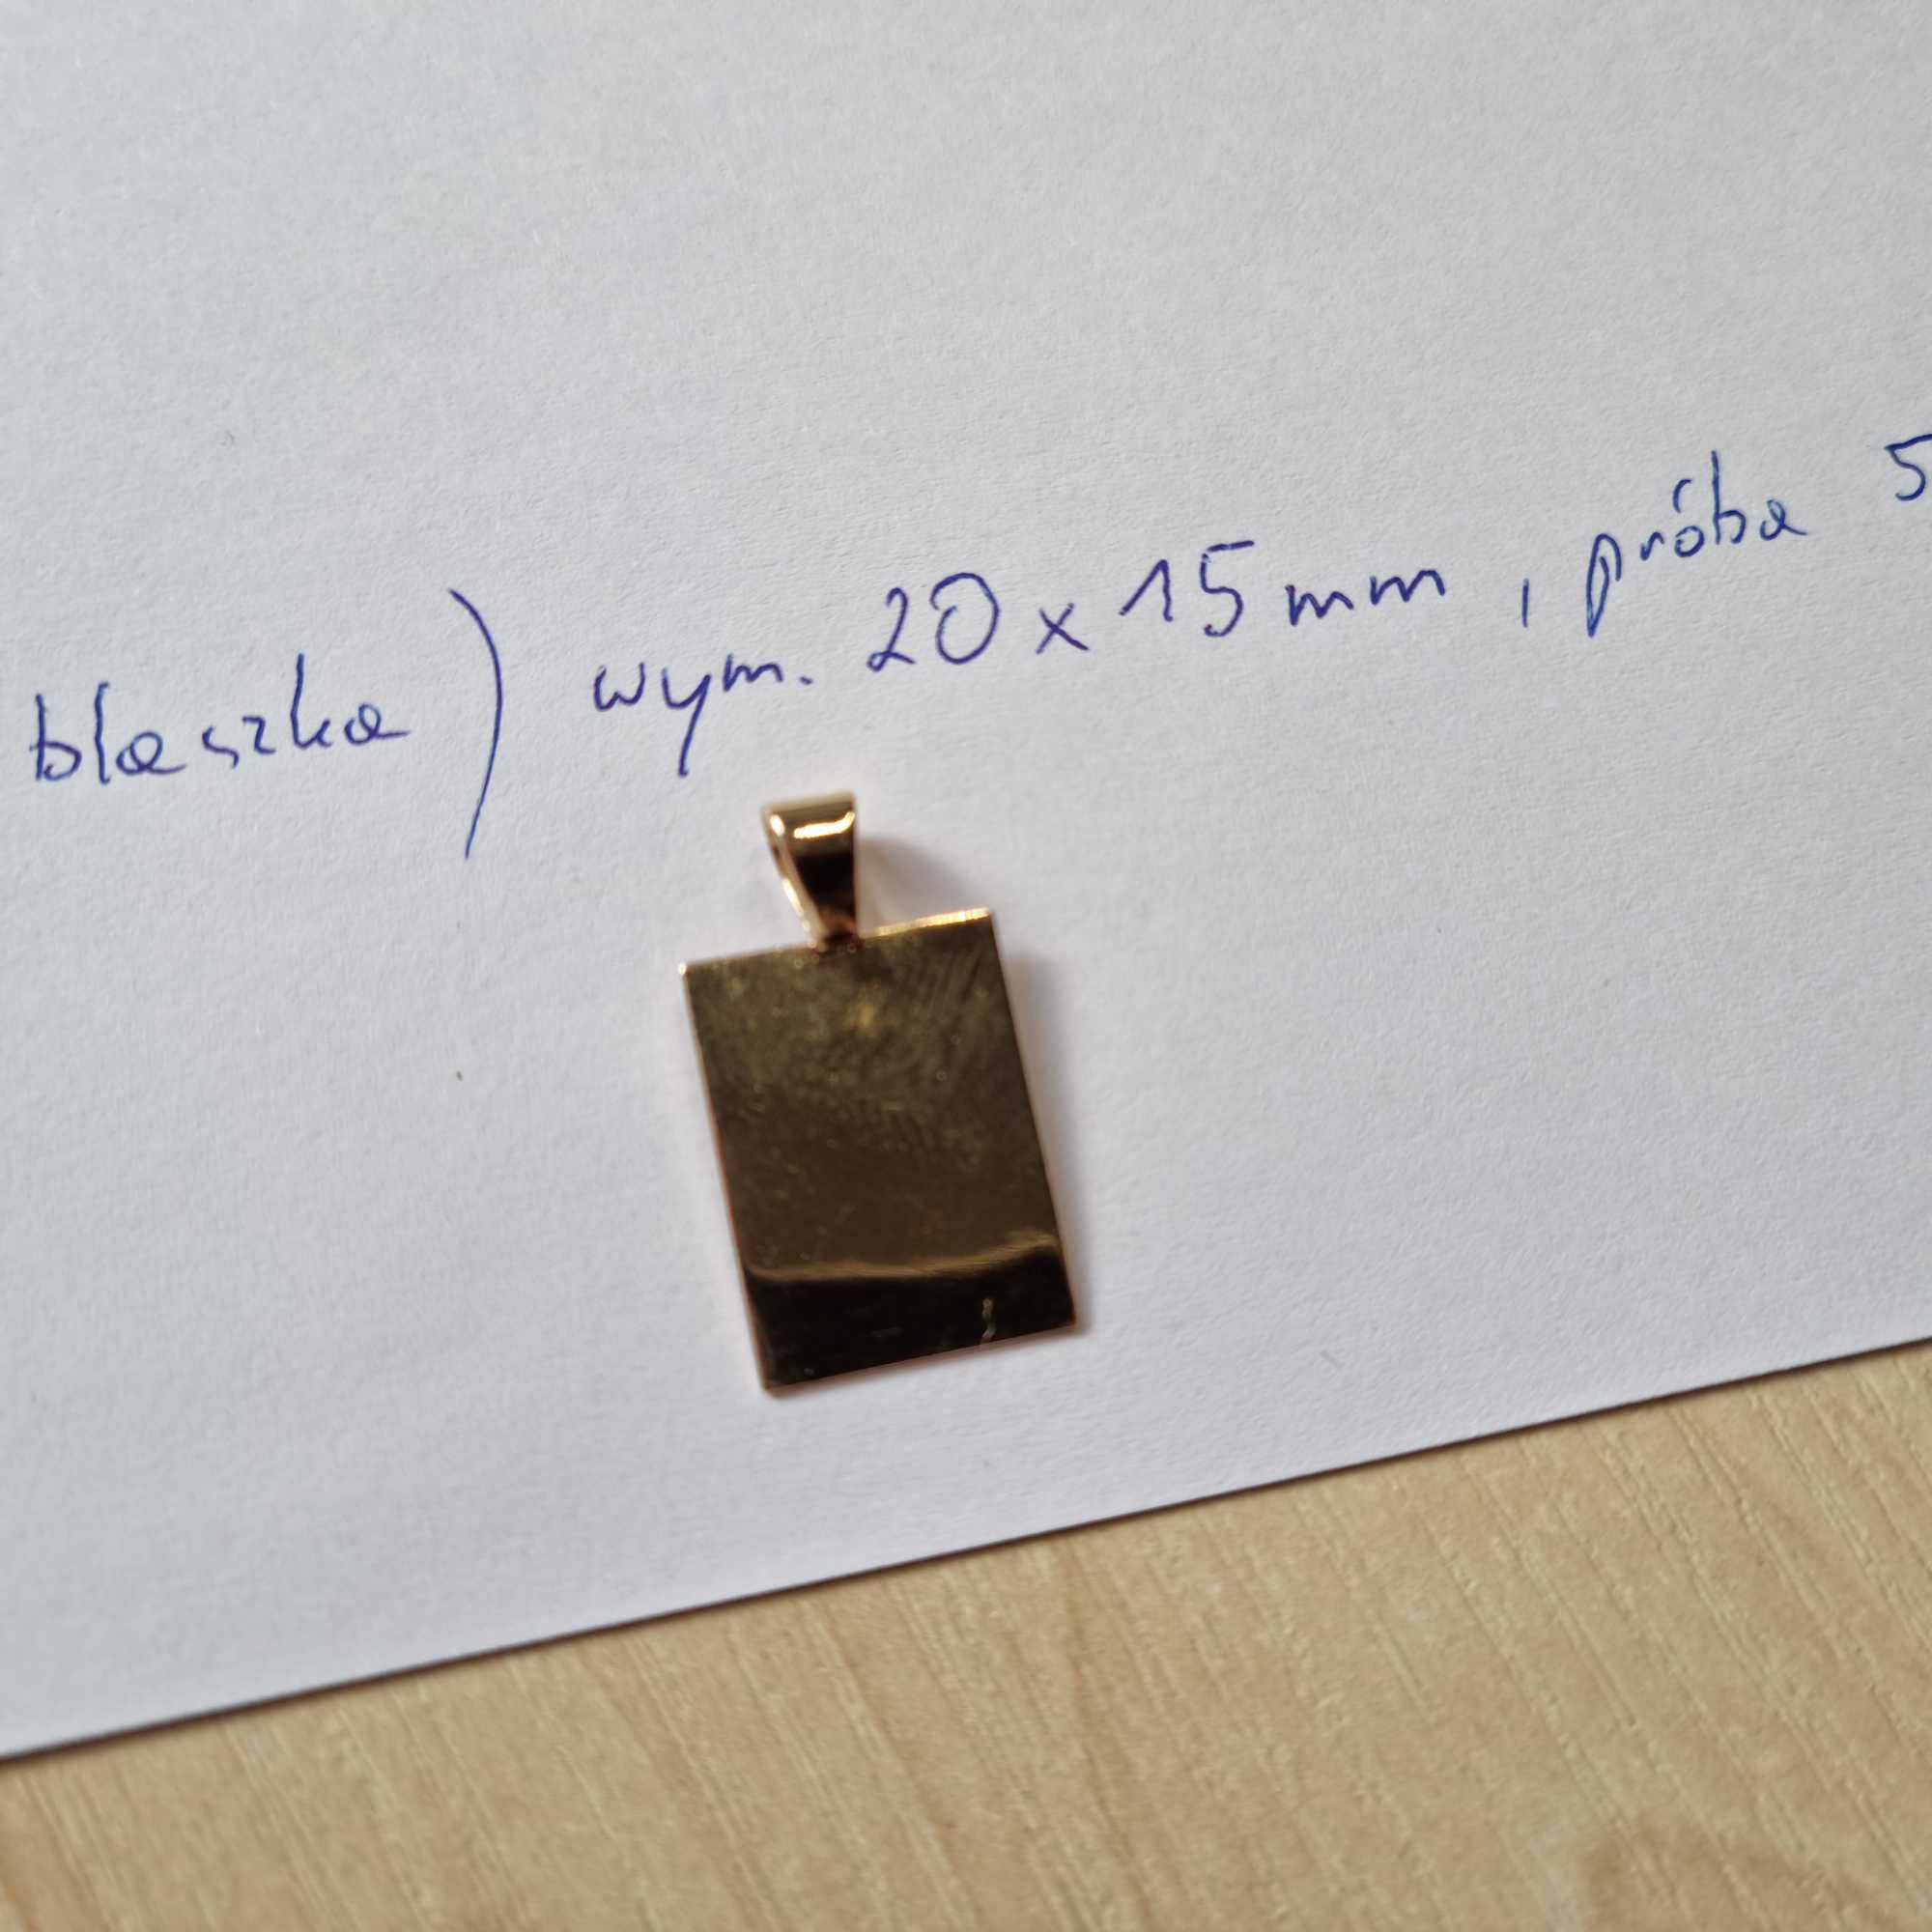 złota obrączka sr.20mm próba 585